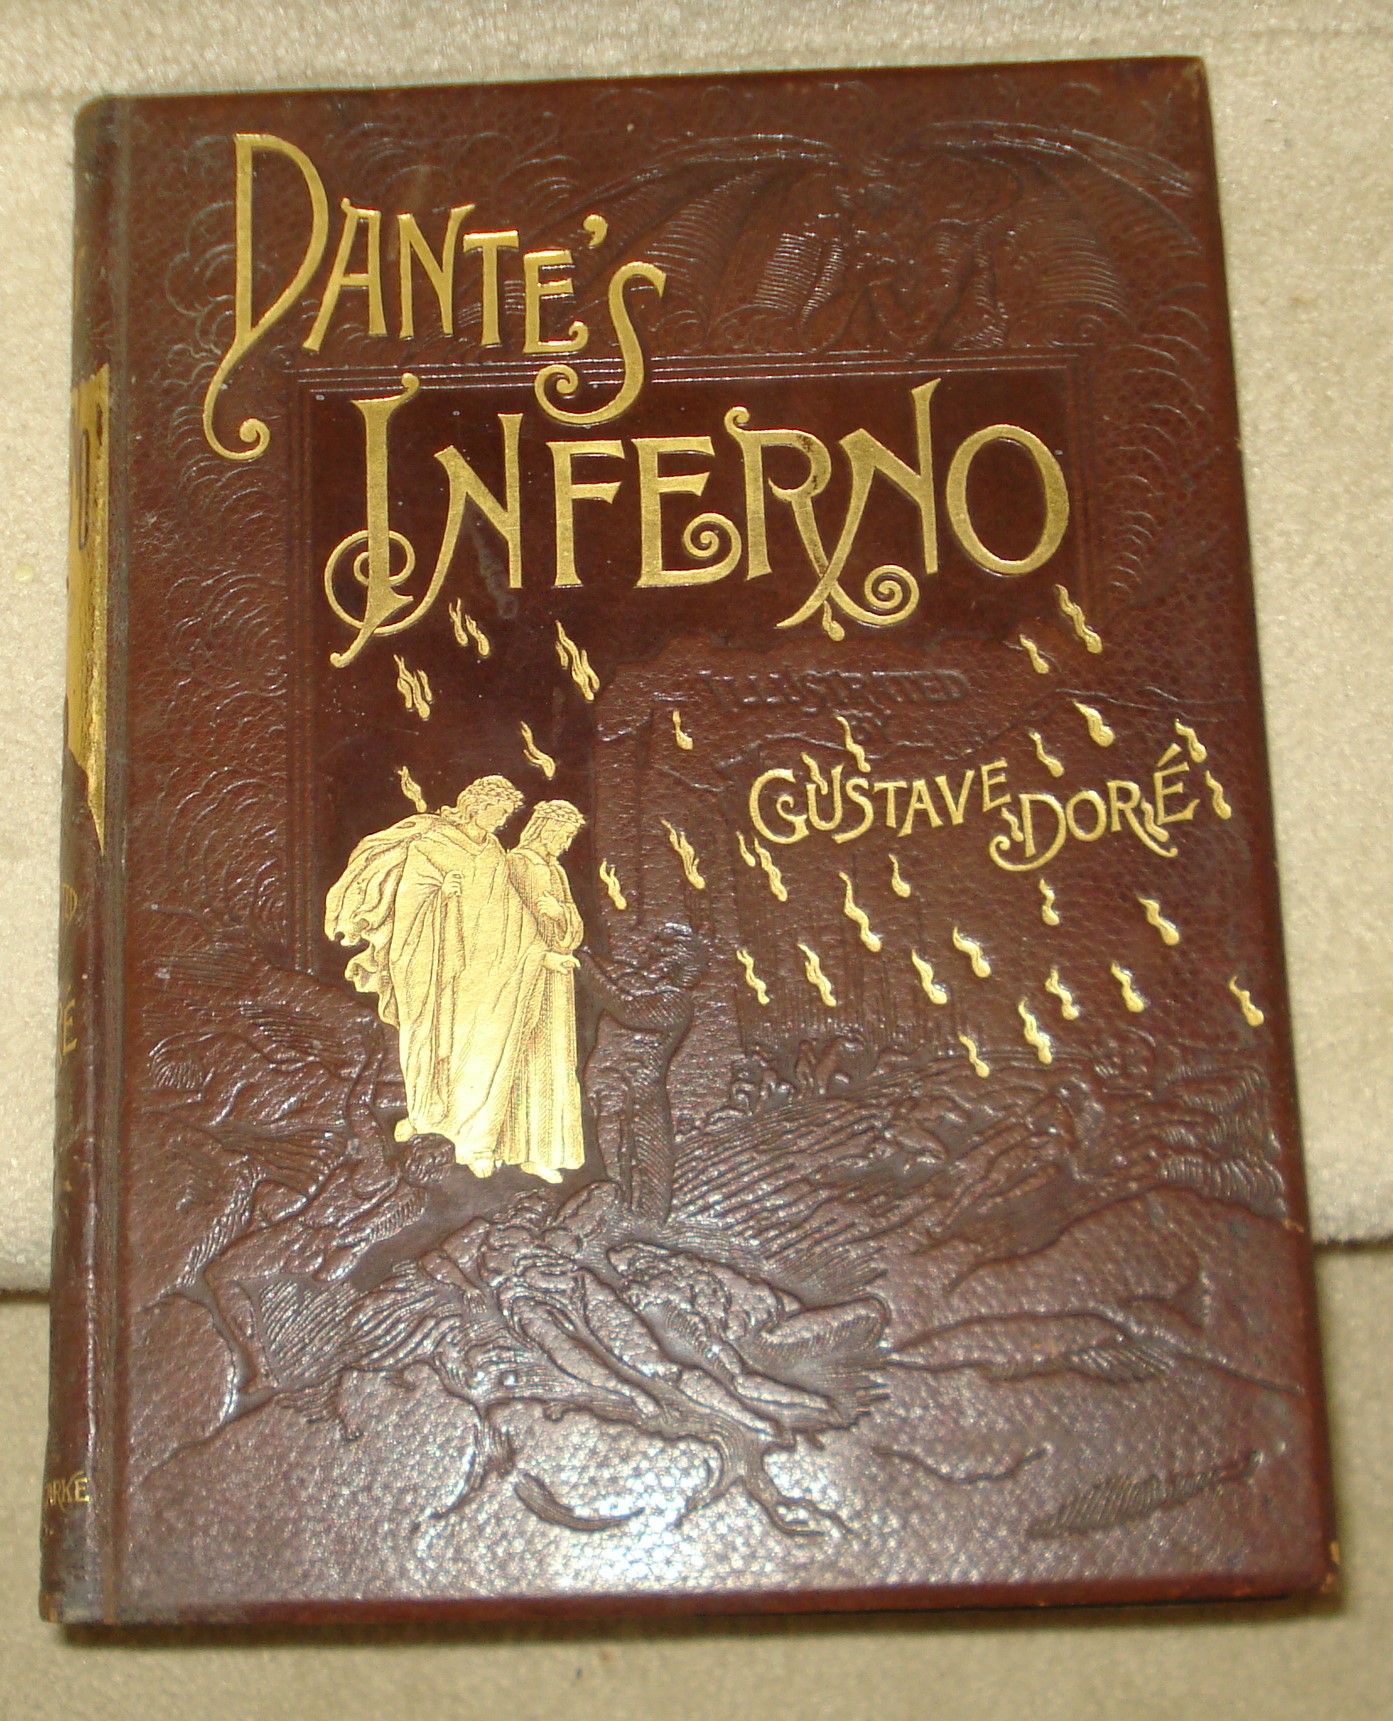 Dante's Inferno - Gustave Dore | Antiques Board